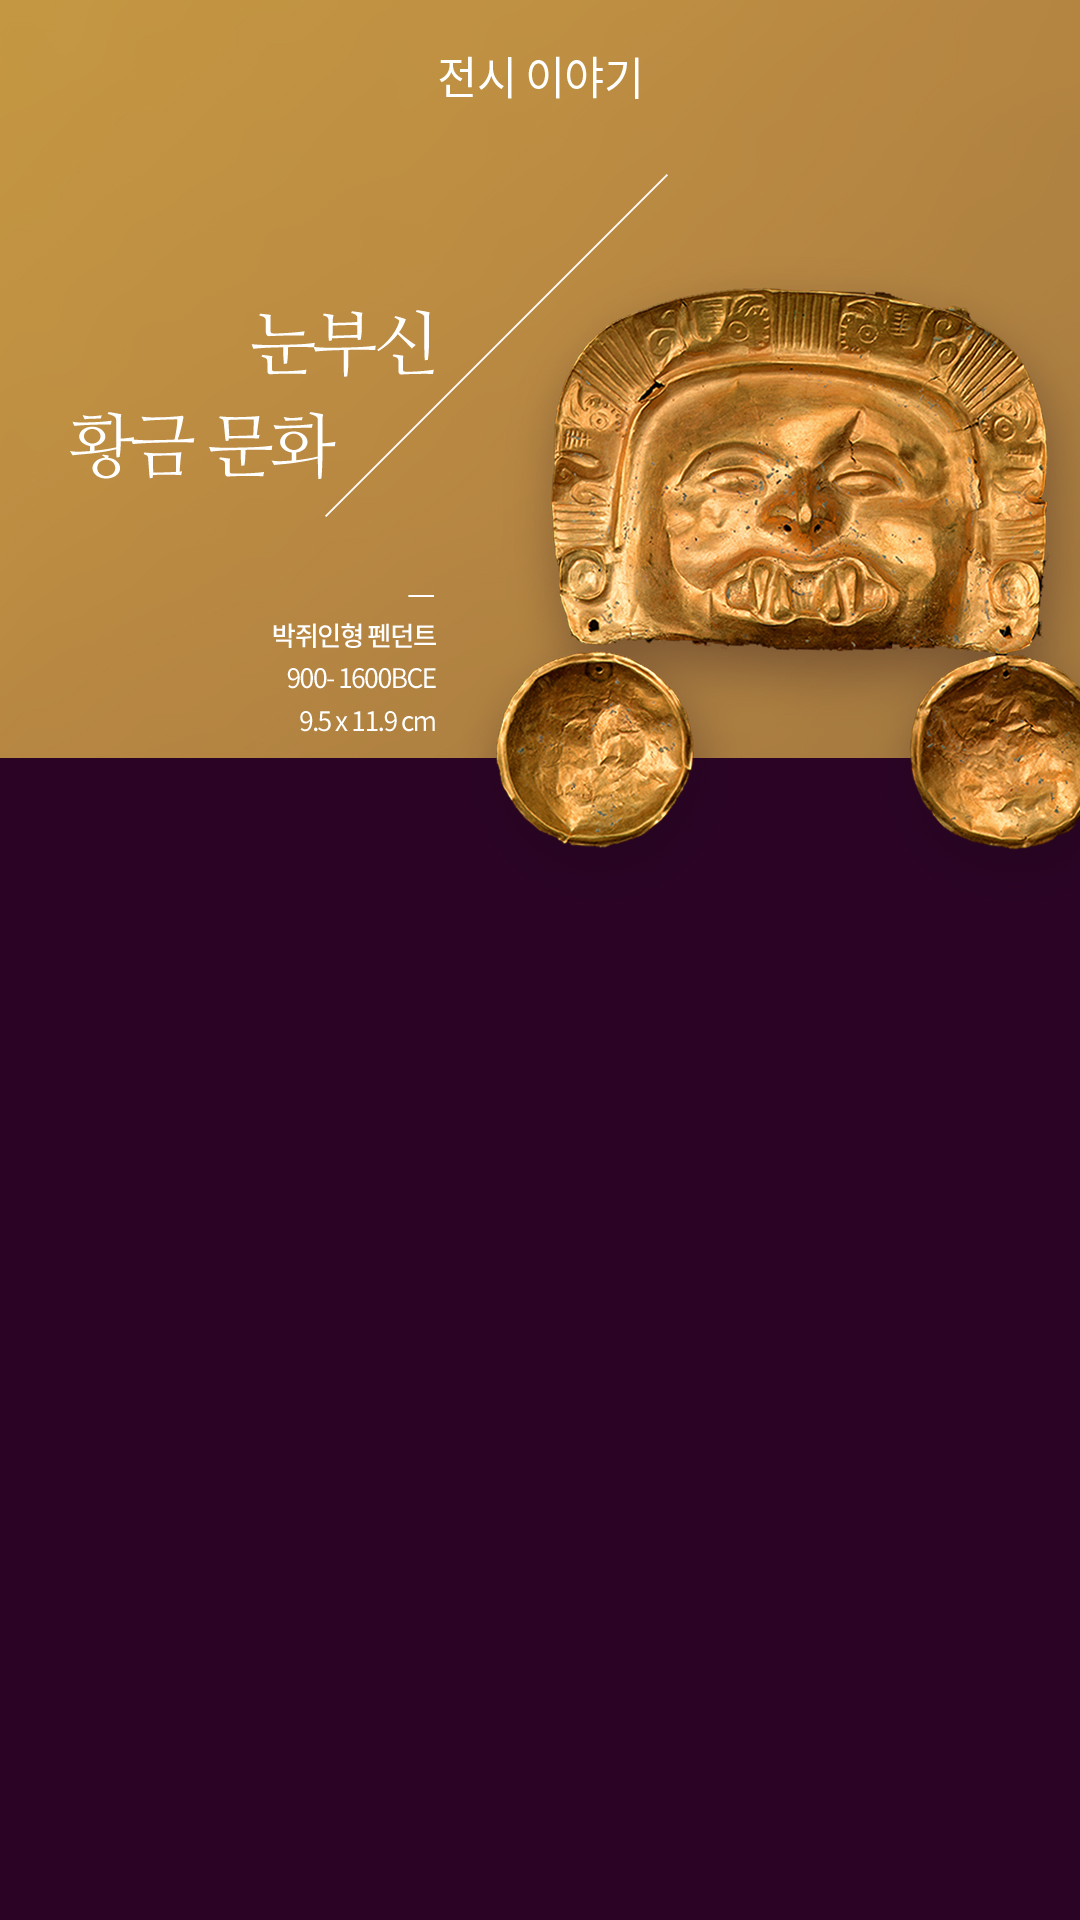 눈부신 황금 문화 / 박쥐인형 펜던트 900- 1600BCE 9.5 x 11.9 cm